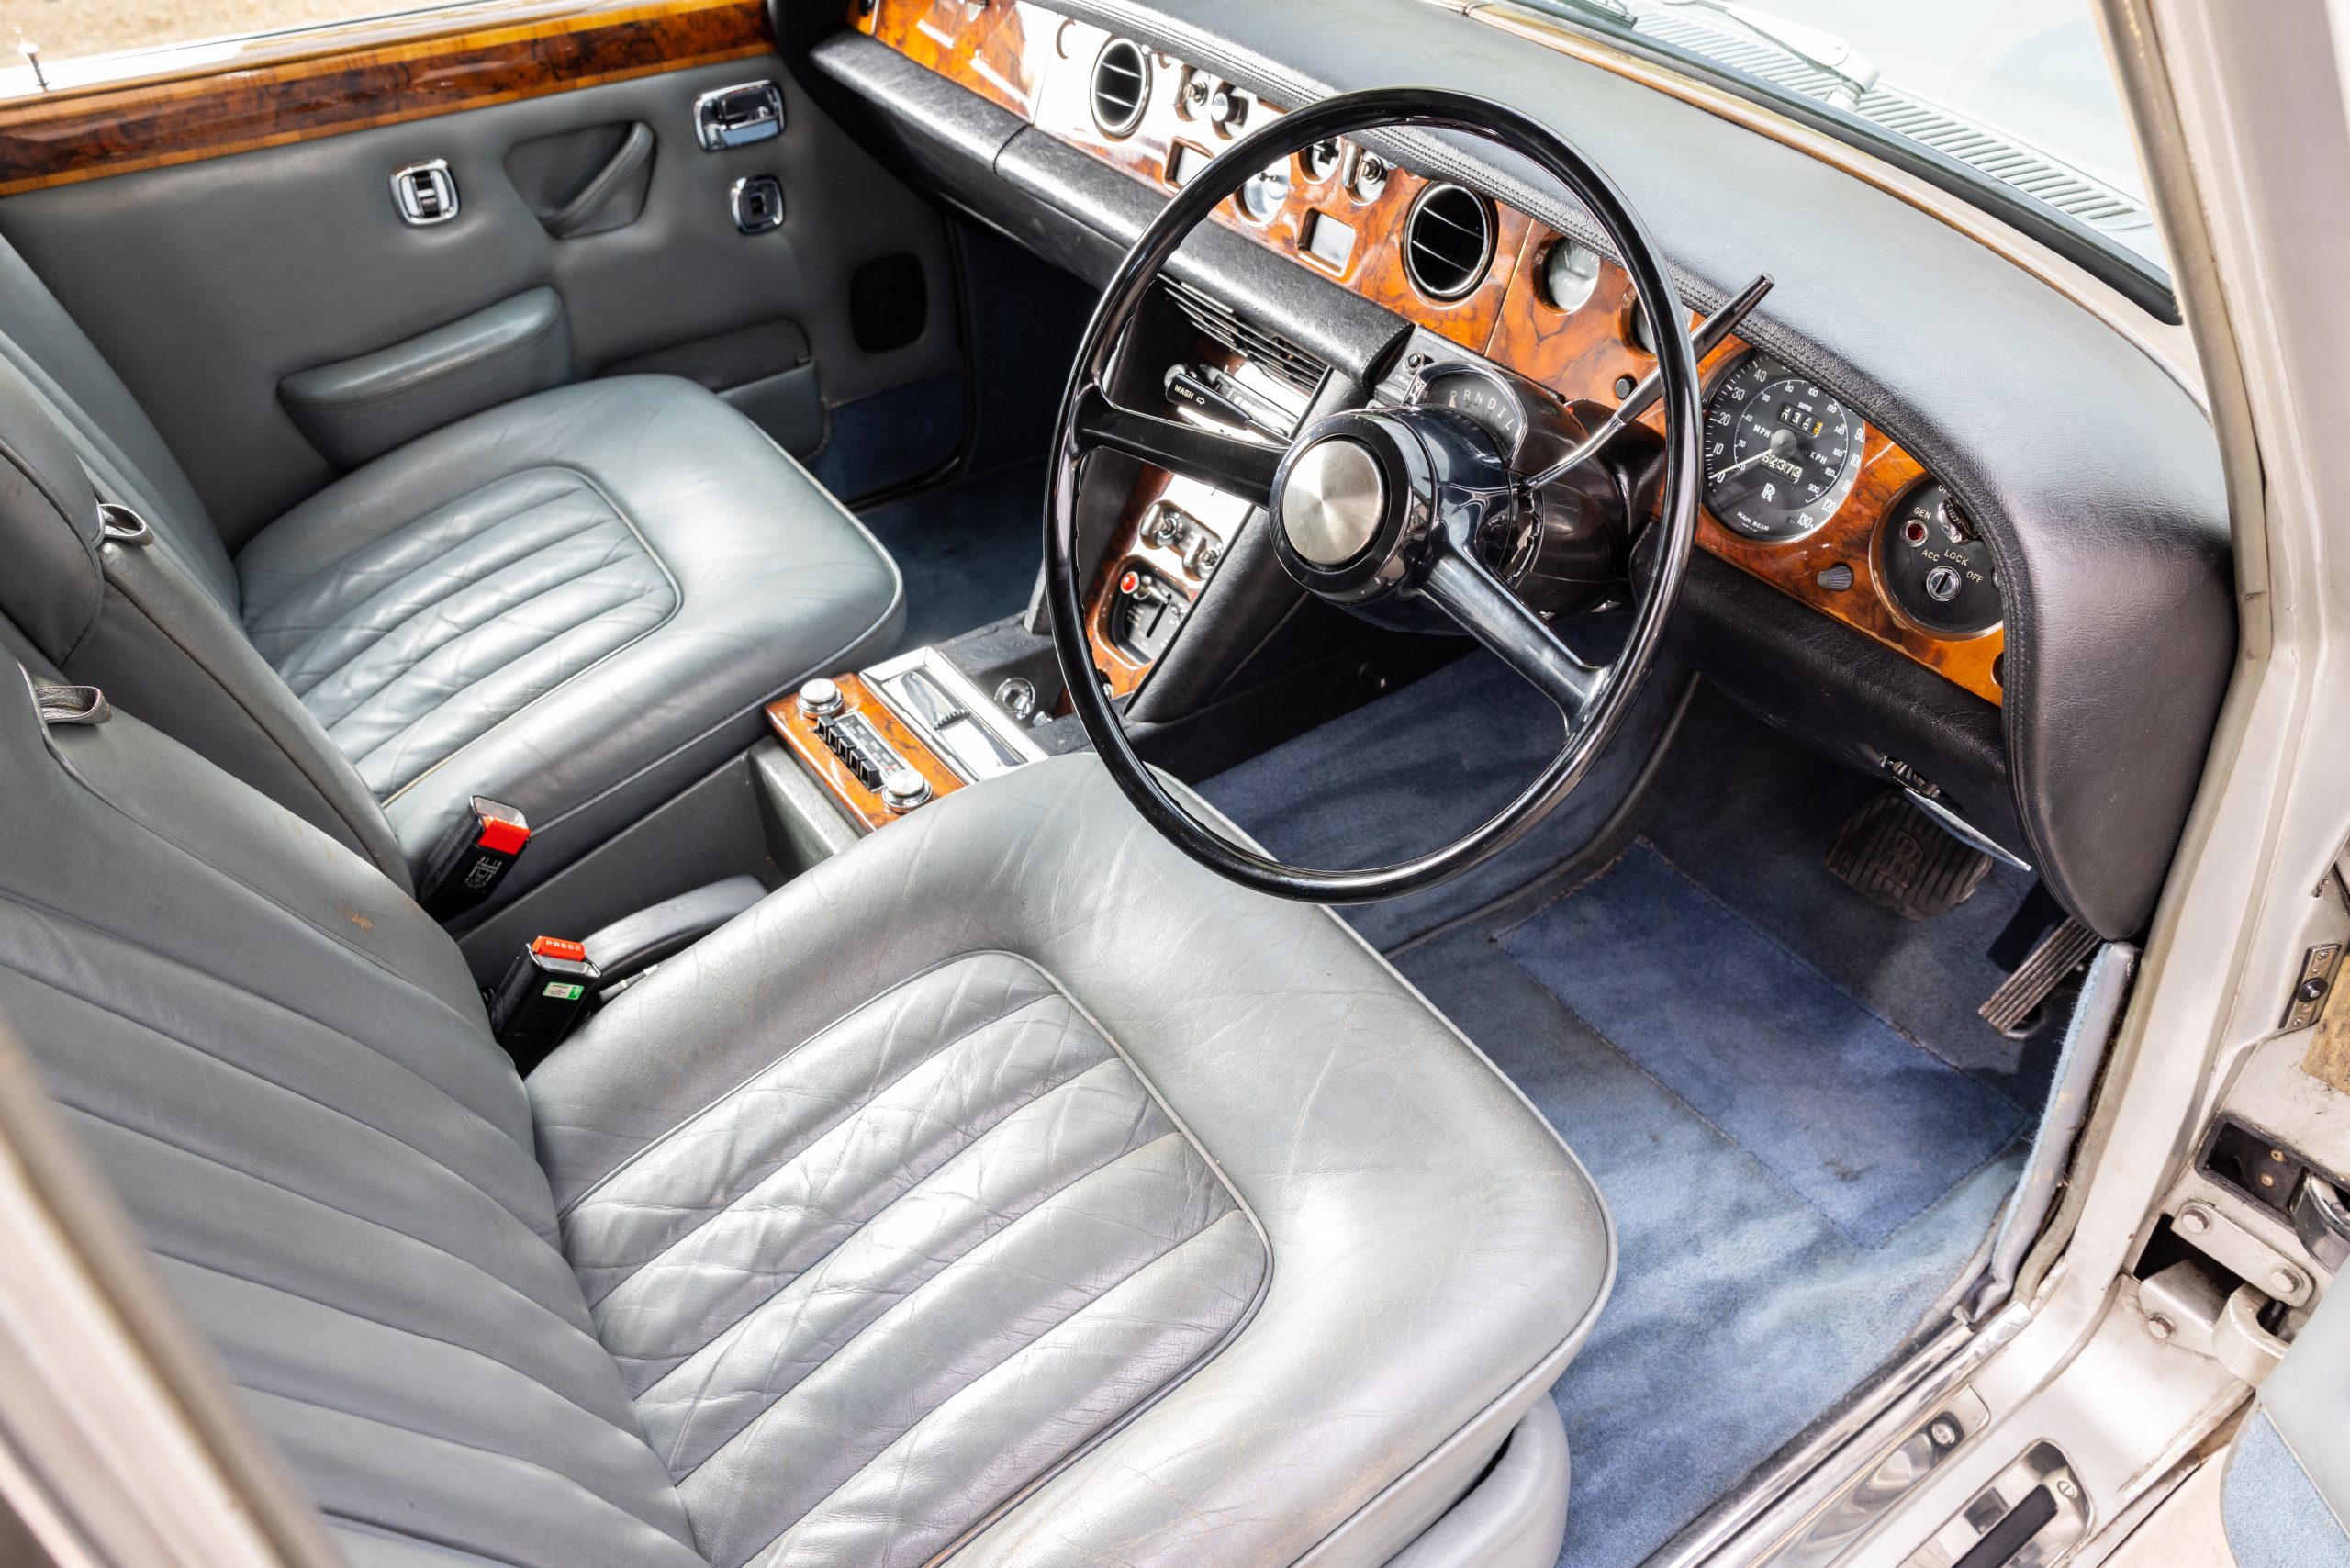 Freddie Mercury Rolls-Royce interior